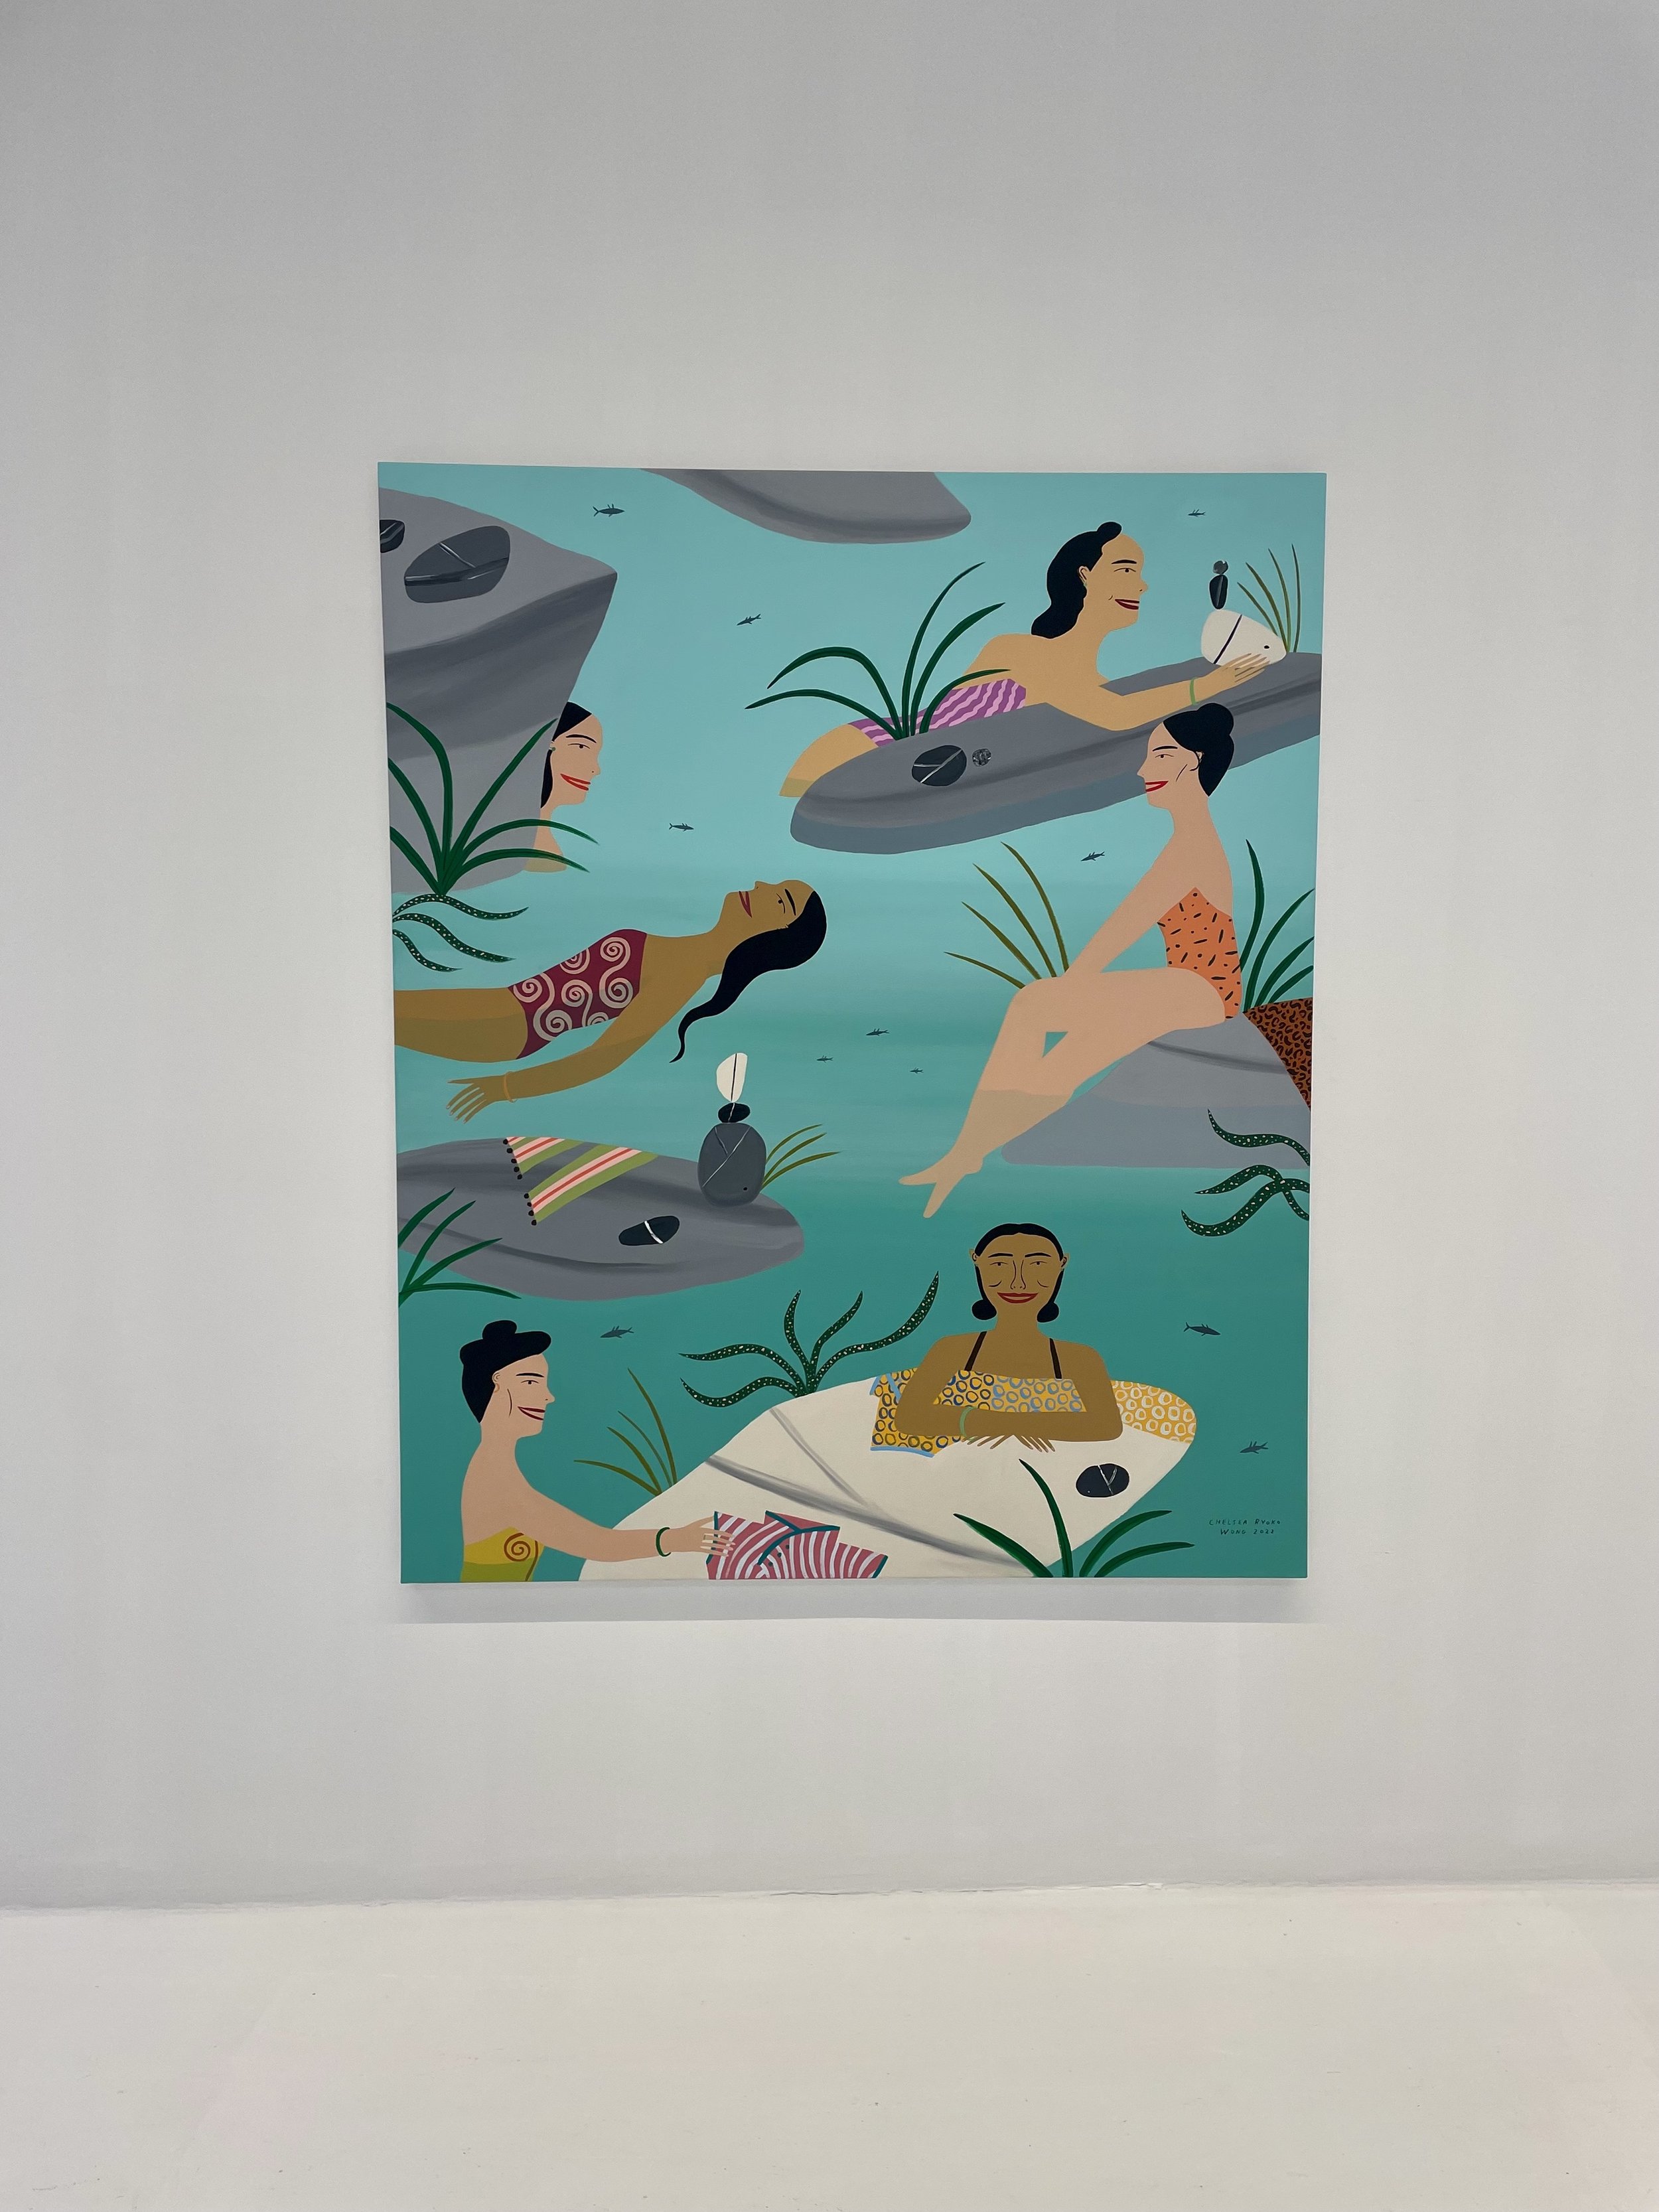 Celestial Women Swim in Gold, by Chelsea Ryoko Wong